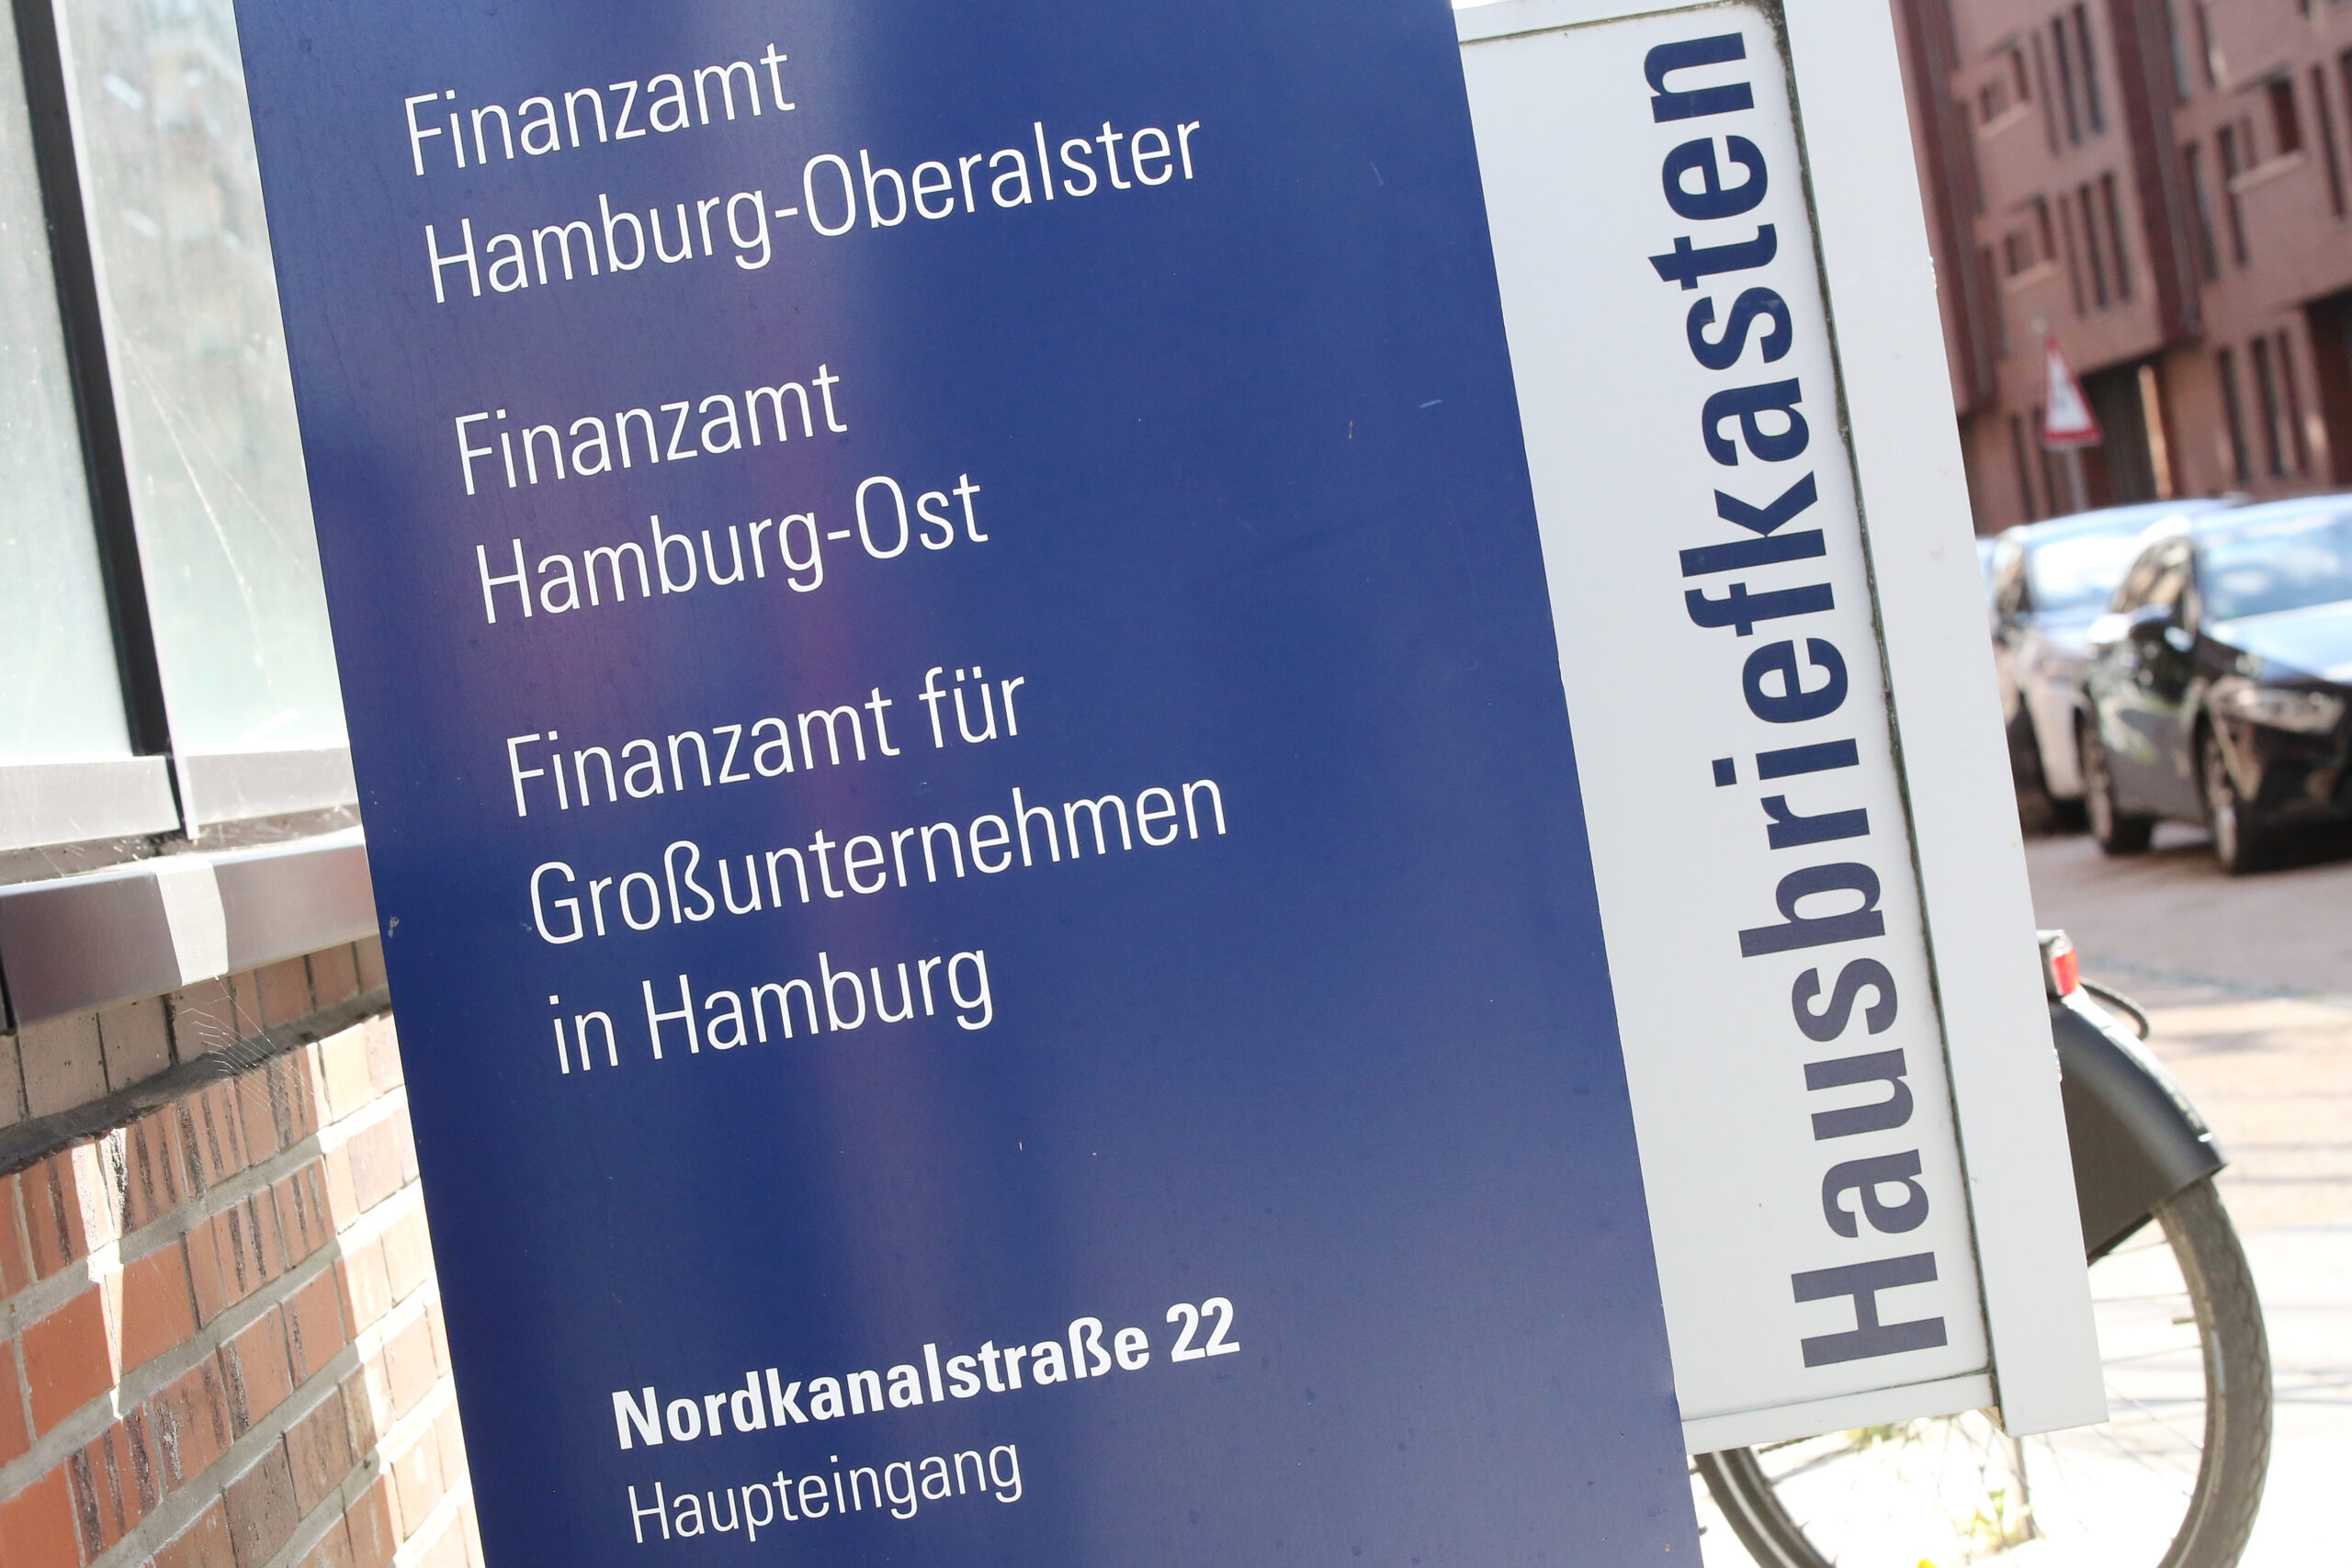 Auf einem Schild des Finanzamts Hamburg steht unter anderem "Finanzamt für Großunternehmen in Hamburg".